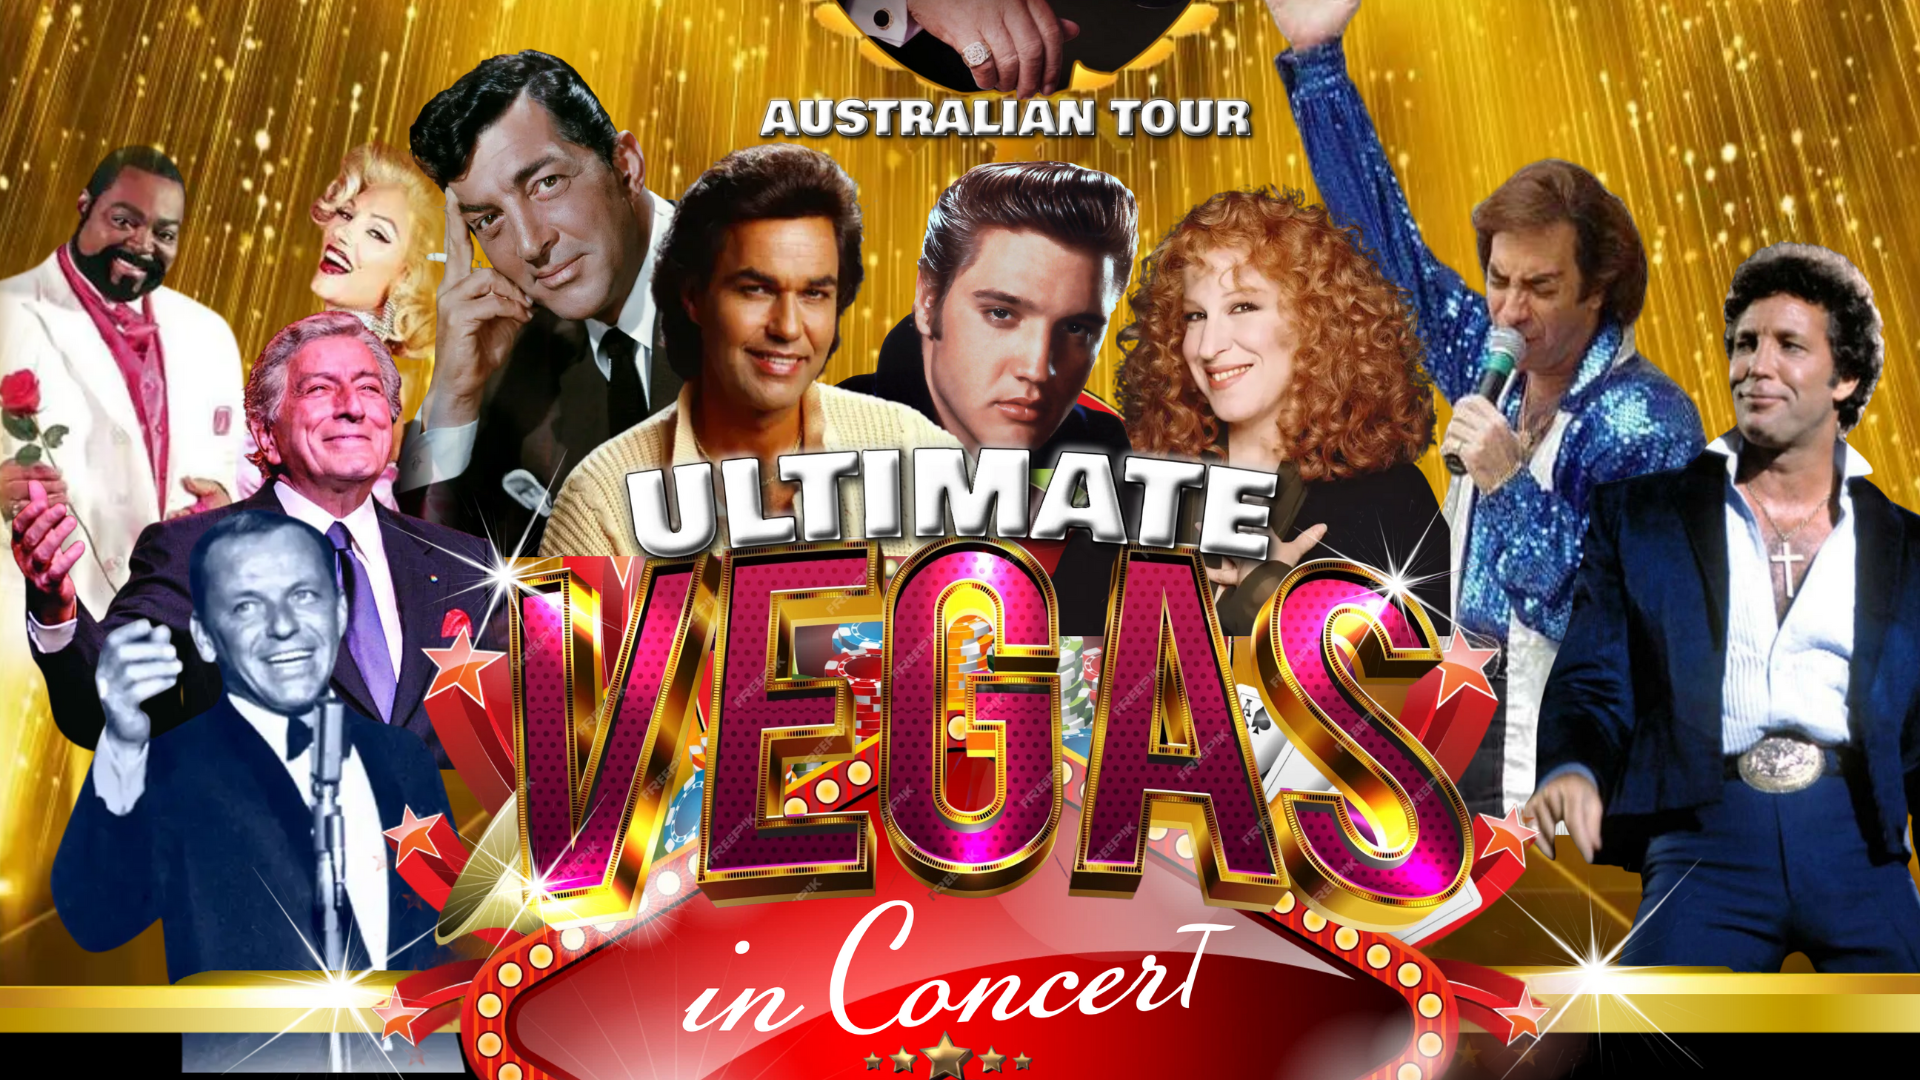 Ultimate Vegas in Concert at Mandurah Performing Arts Centre